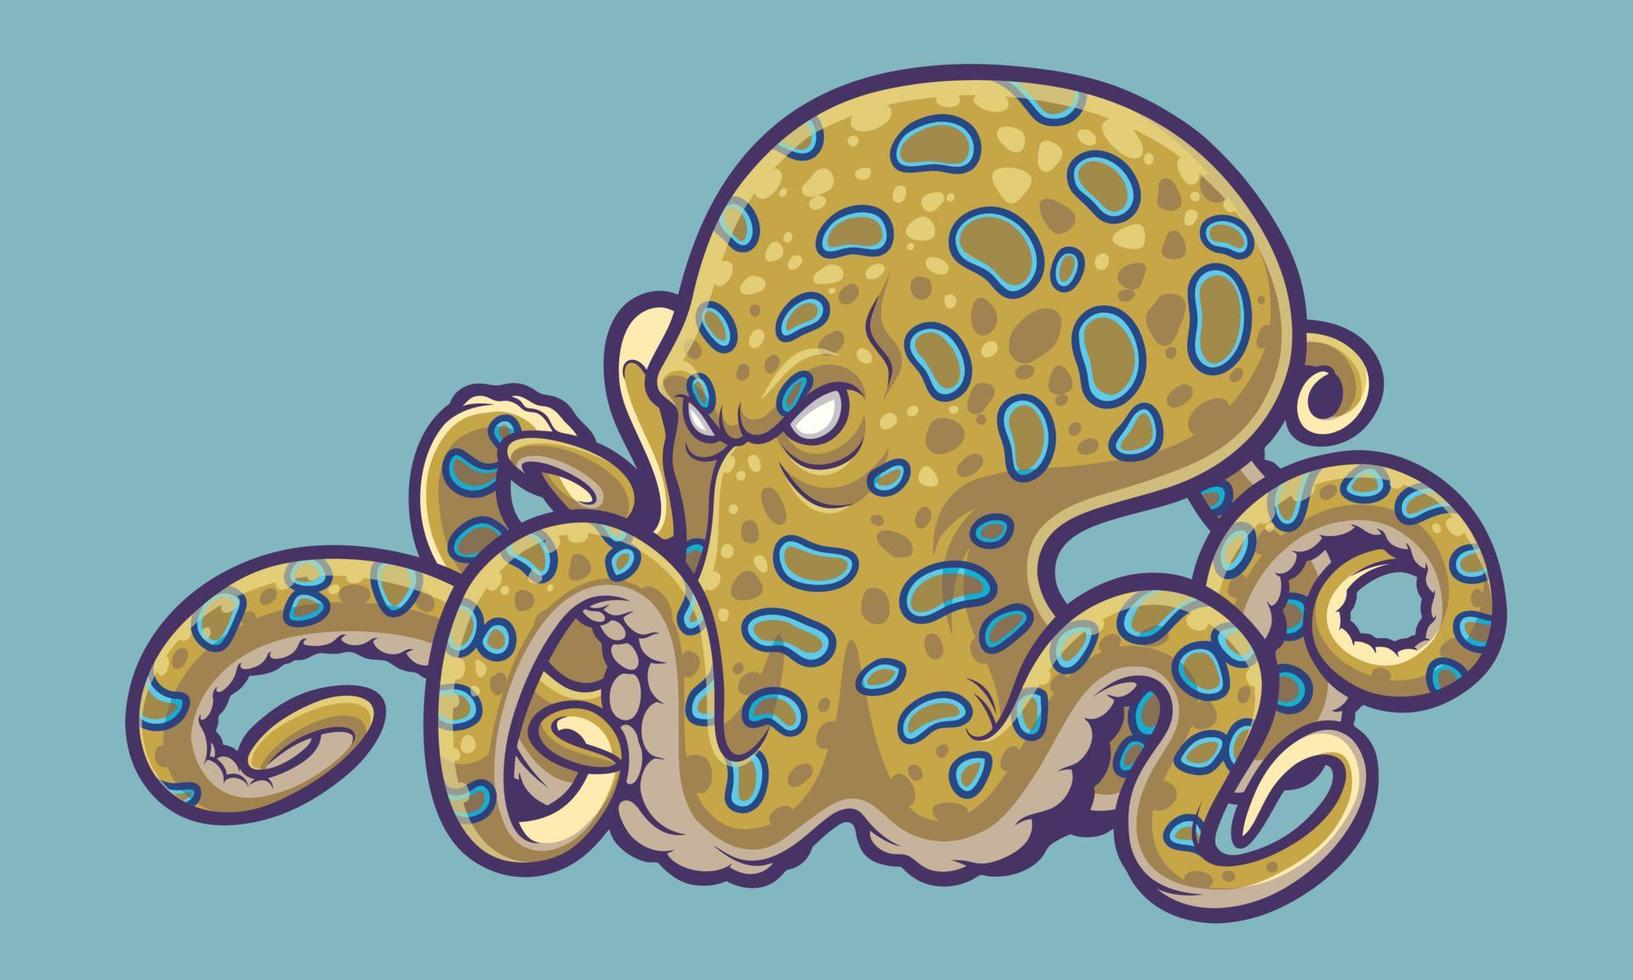 giftige octopus, blauwe ringoctopus in cartoonstijl 3582811 - Vectors, Vector Bestanden, Ontwerpen Templates